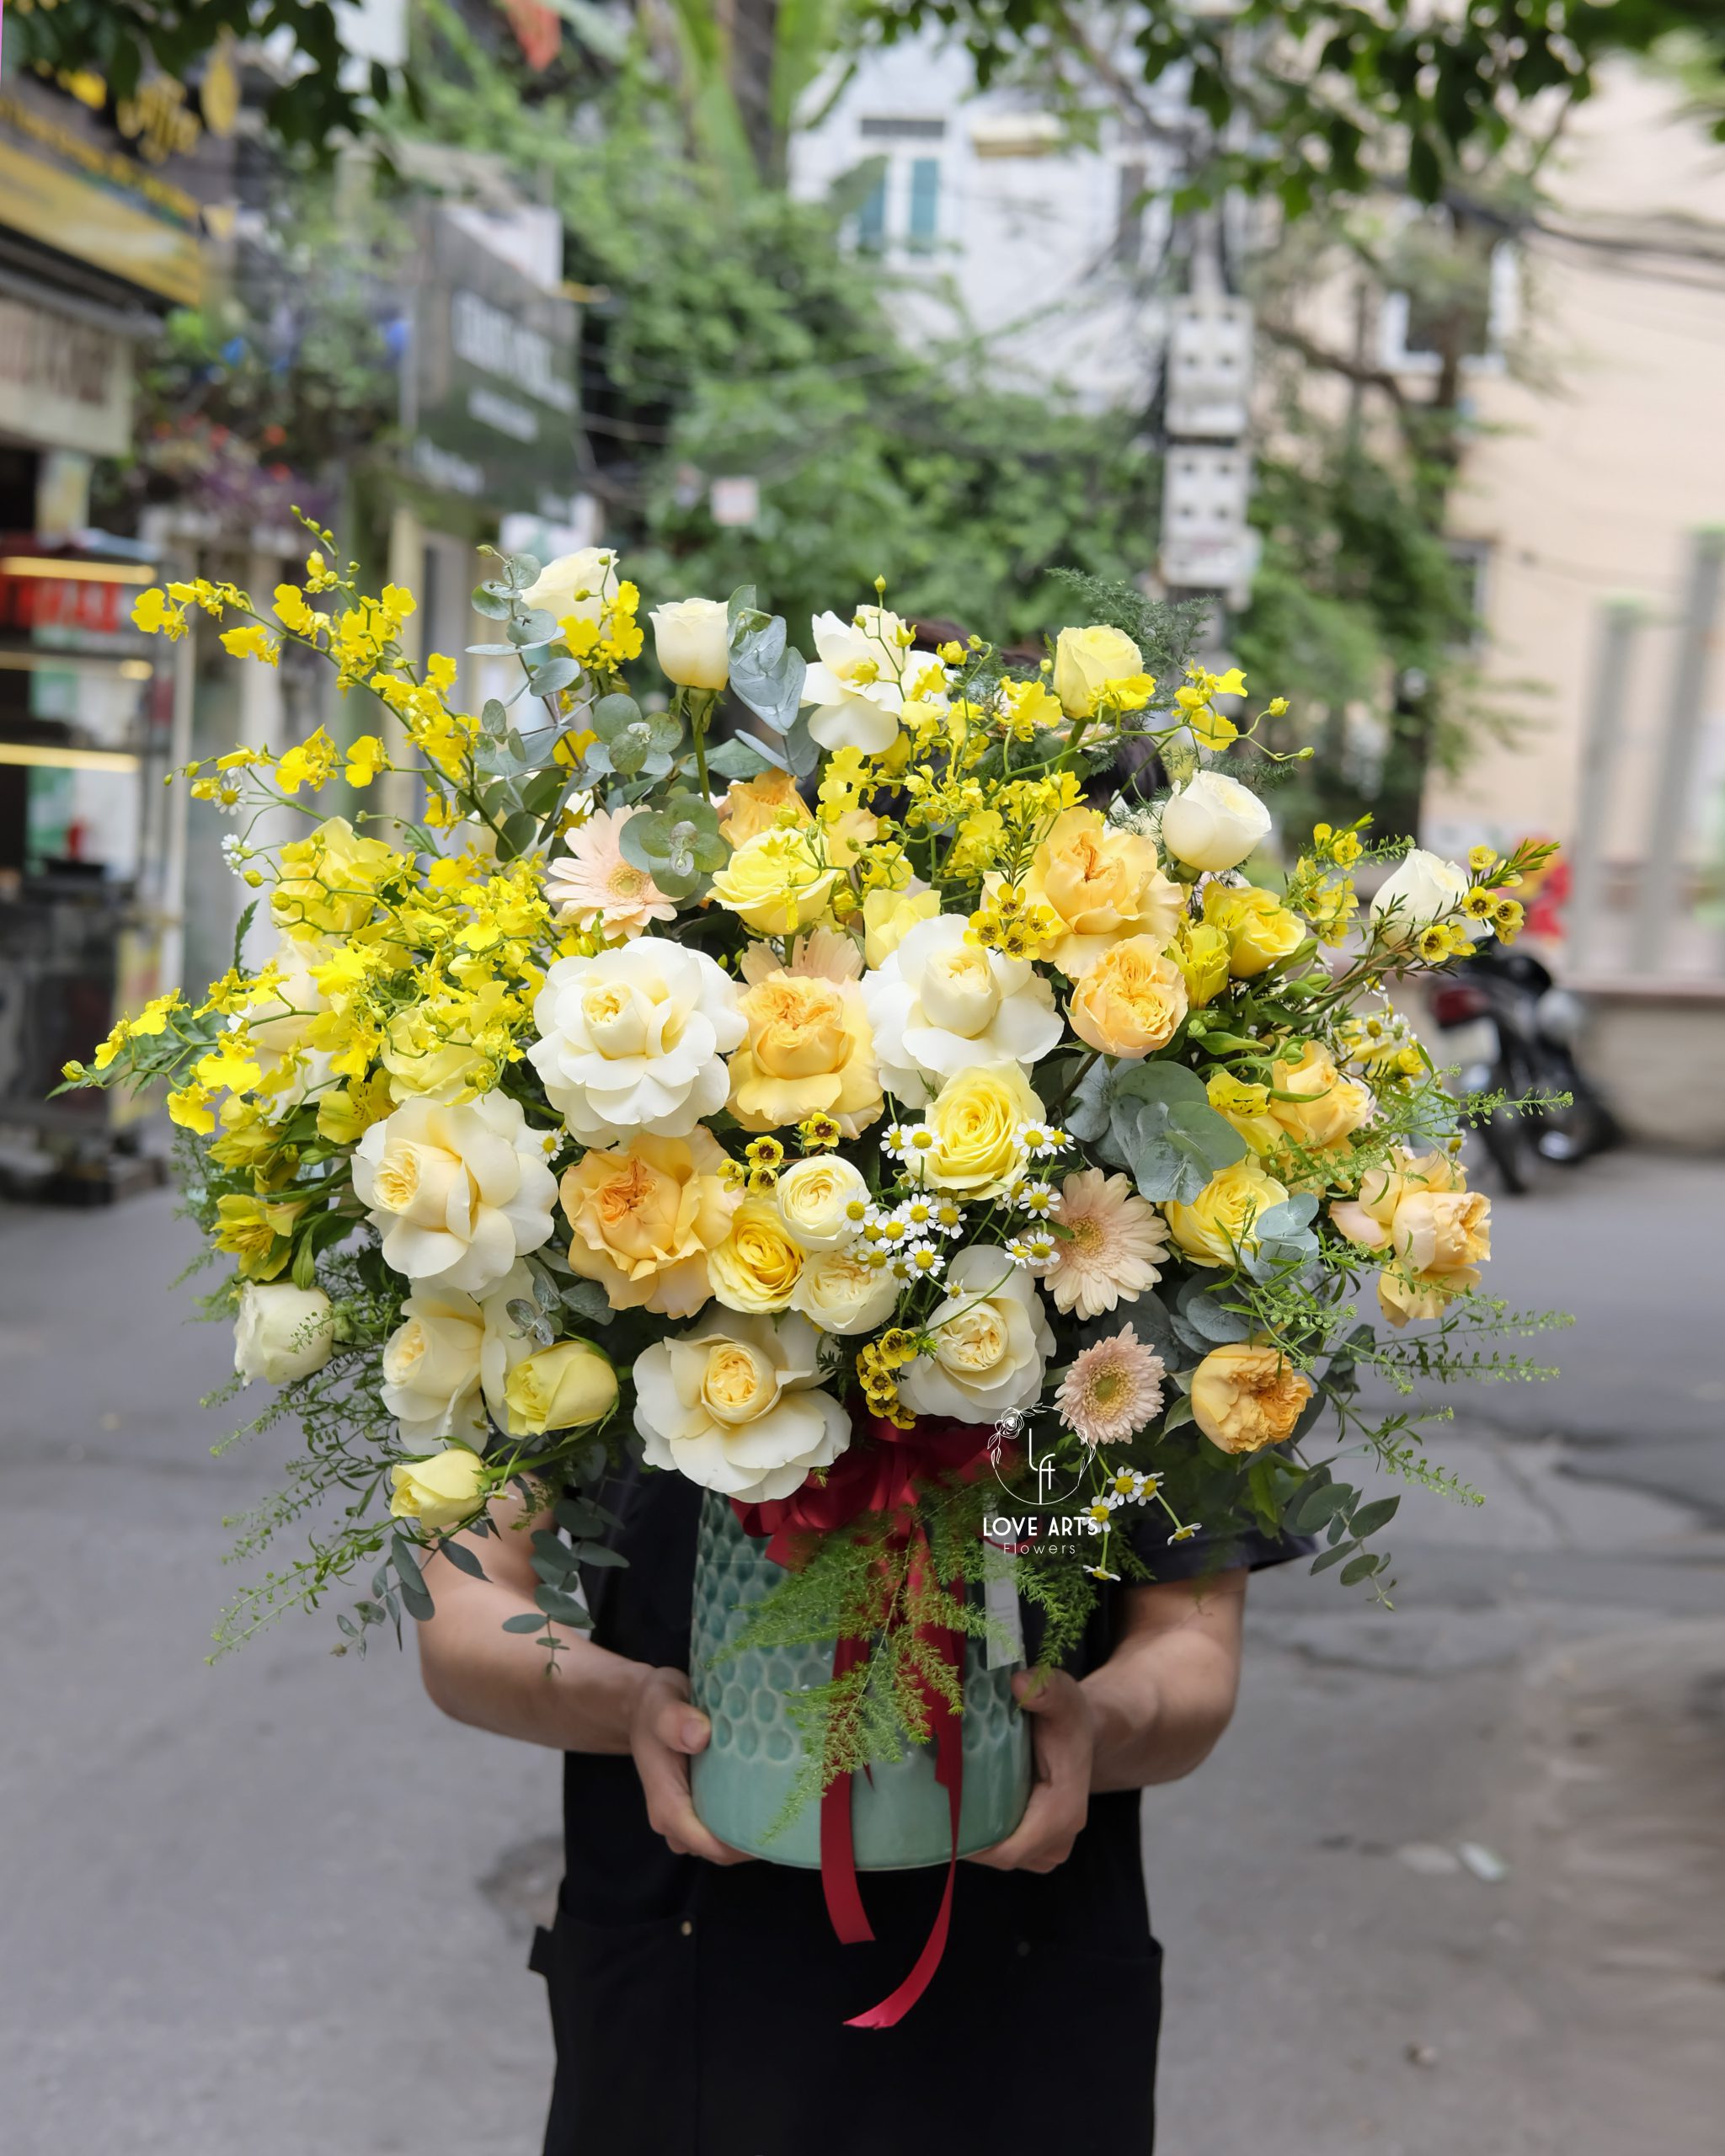 Hoa đẹp, giá rẻ tại quận Cầu Giấy